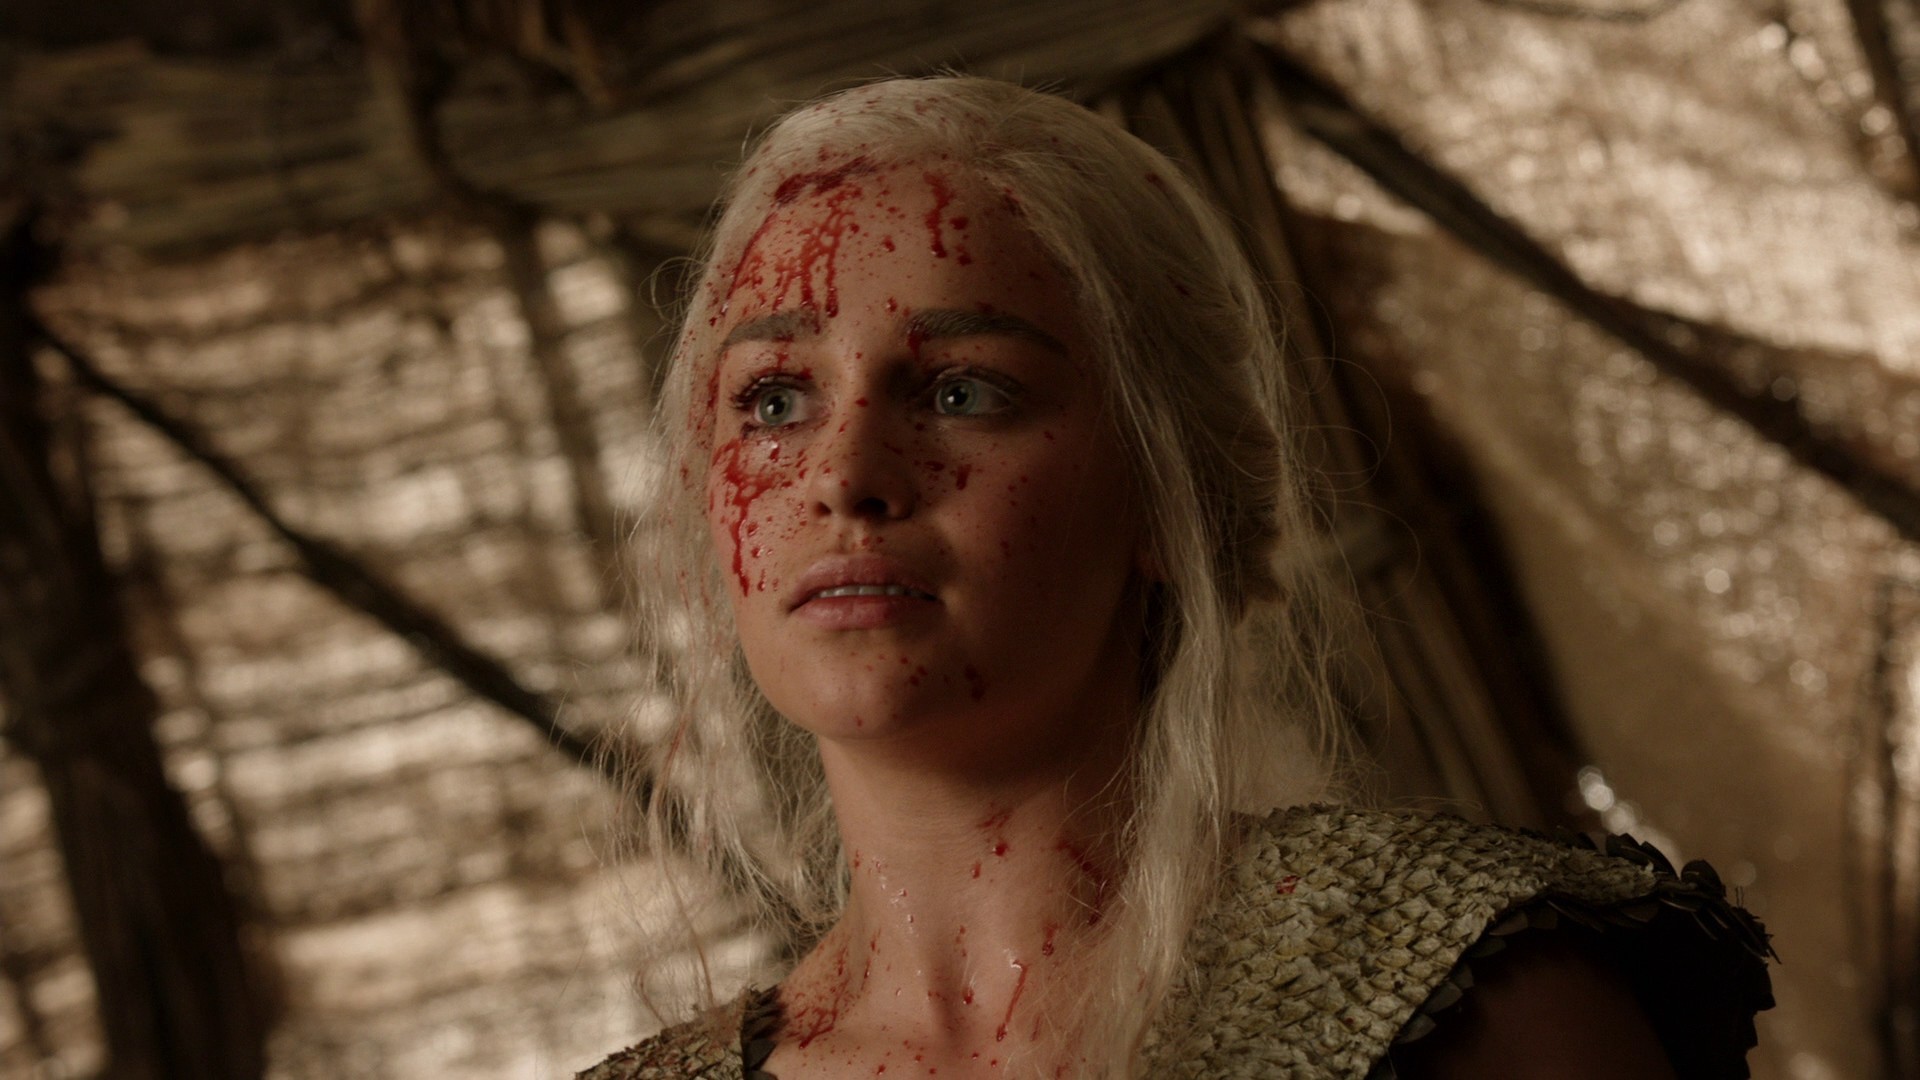 People 1920x1080 Game of Thrones Daenerys Targaryen Emilia Clarke women blood actress blonde fantasy girl TV series blood spatter dirty